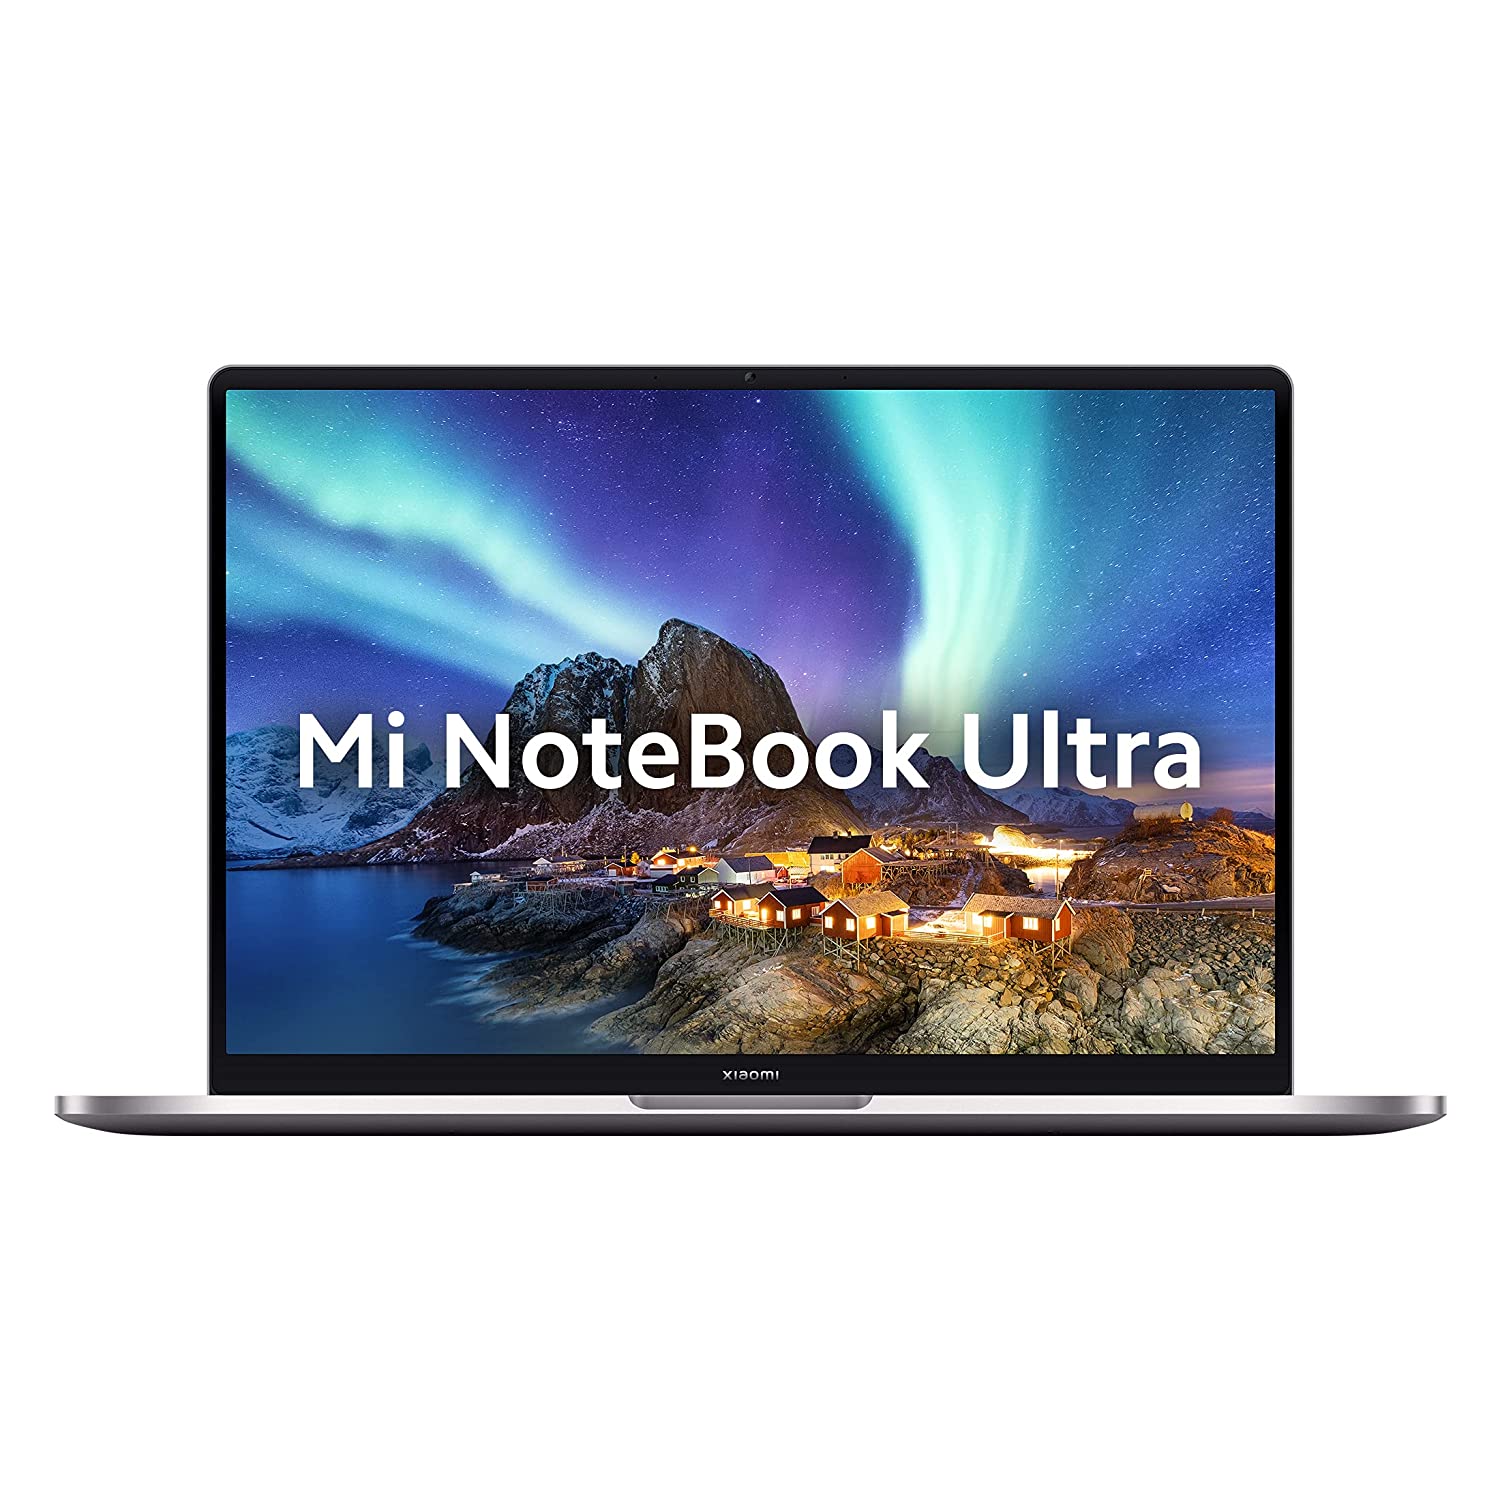 सुपर फास्ट स्पीड वाले इस Mi Notebook पर आया है सीधे 20 हजार रुपये का डिस्काउंट